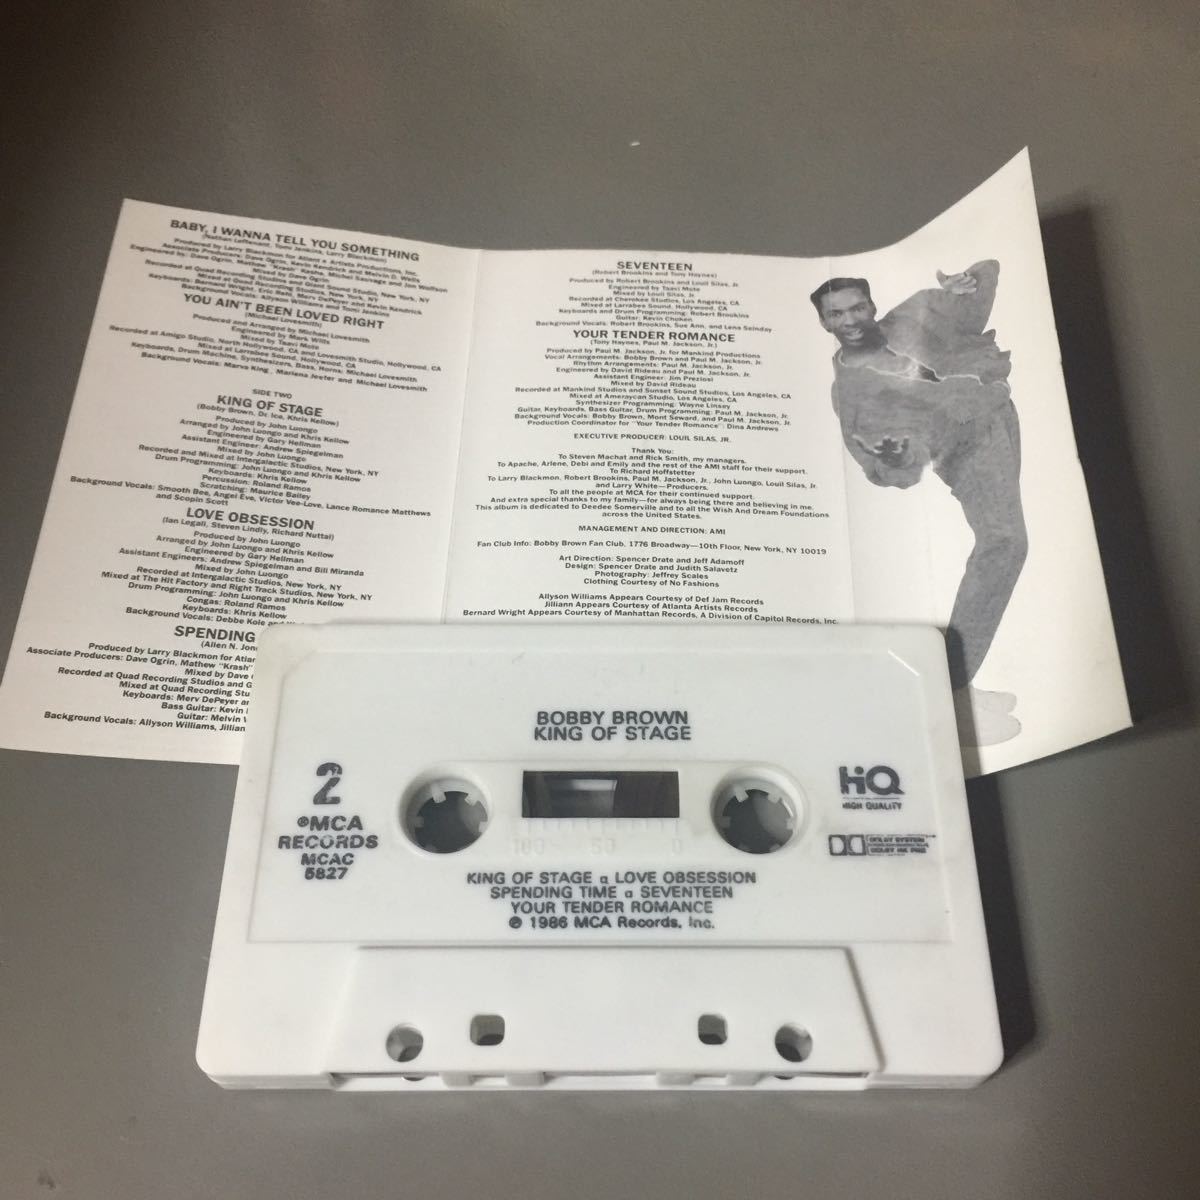 ボビー・ブラウン KING OF STAGE USA盤カセットテープ_画像3